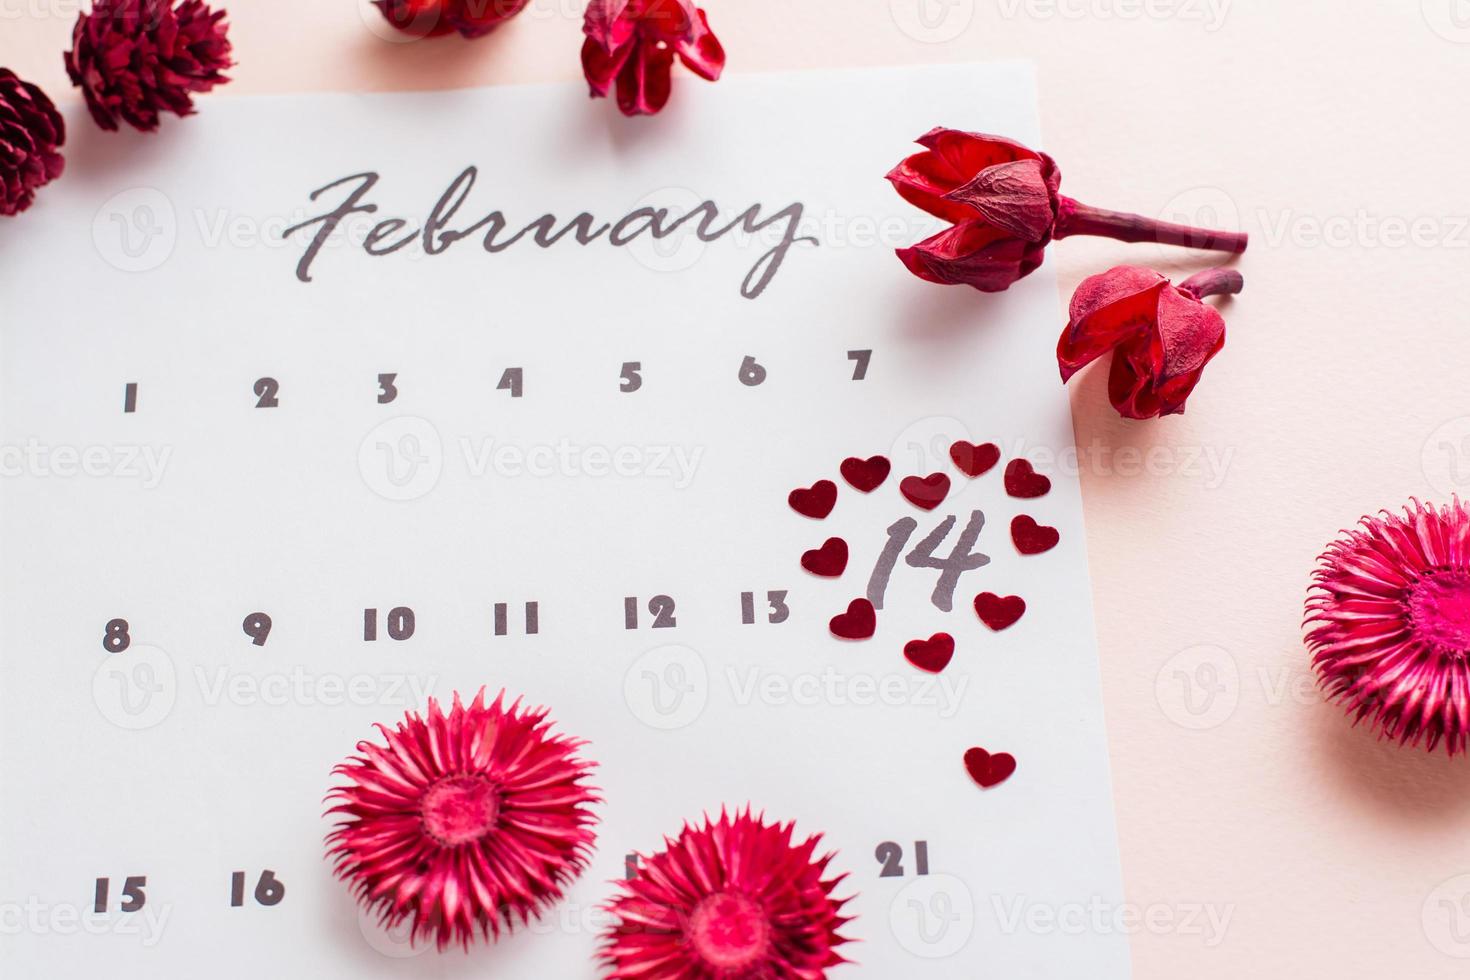 San Valentín día. pequeño rojo corazones realce el fecha febrero 14 en el calendario sábana y seco flores en un rosado antecedentes. foto